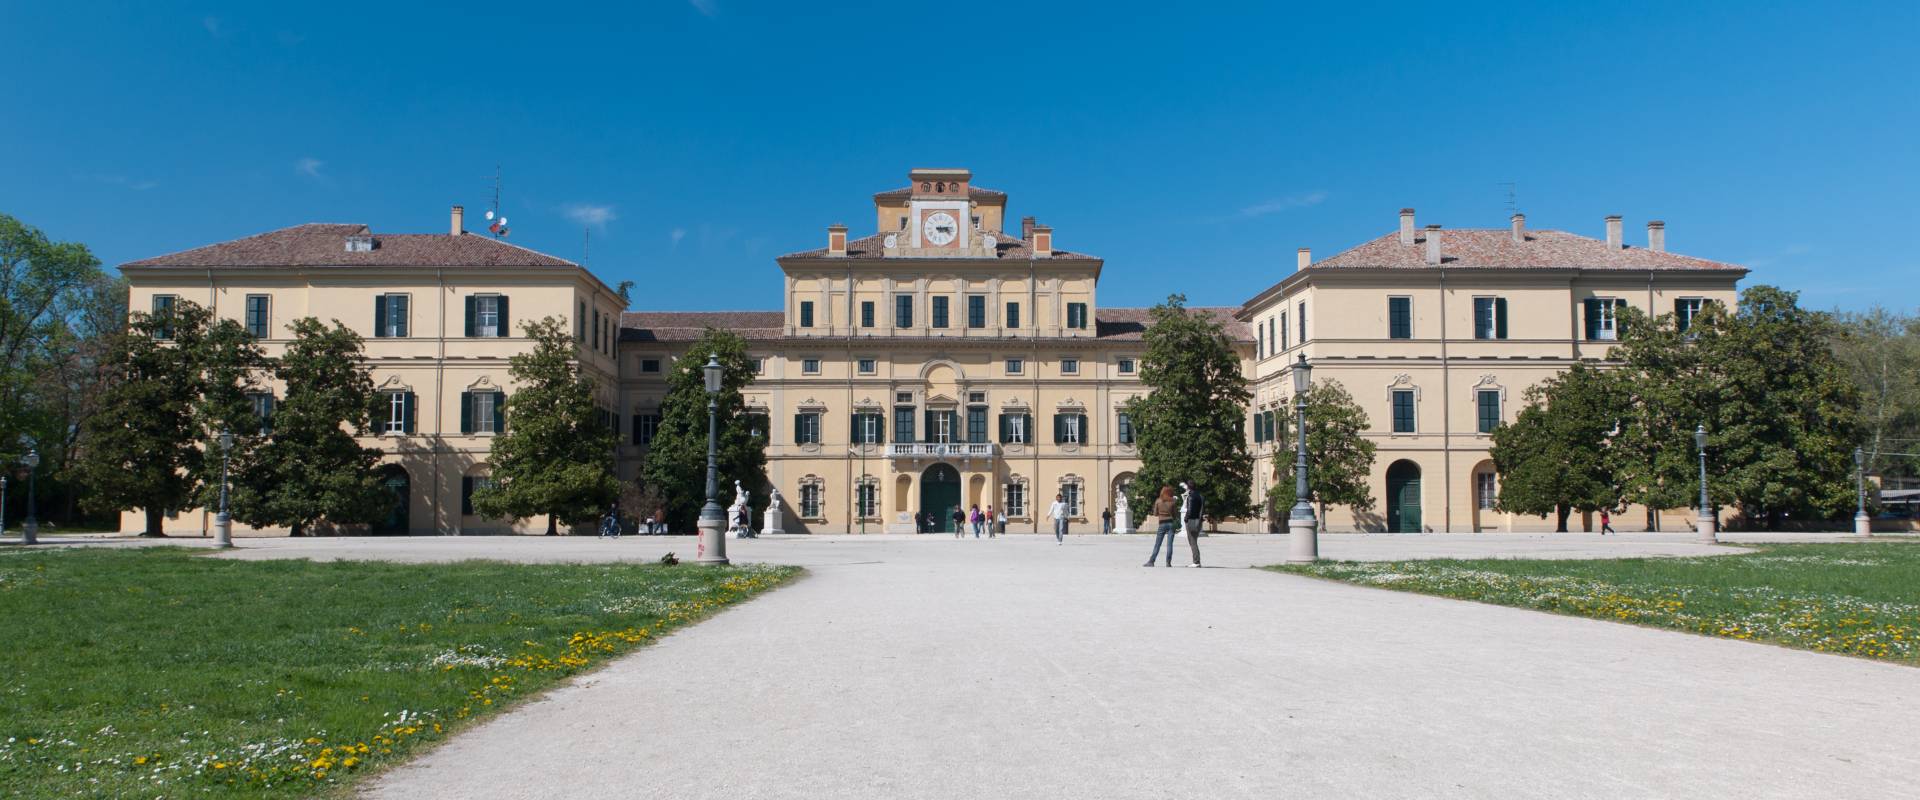 Palazzo Ducale foto di Fabio Duma